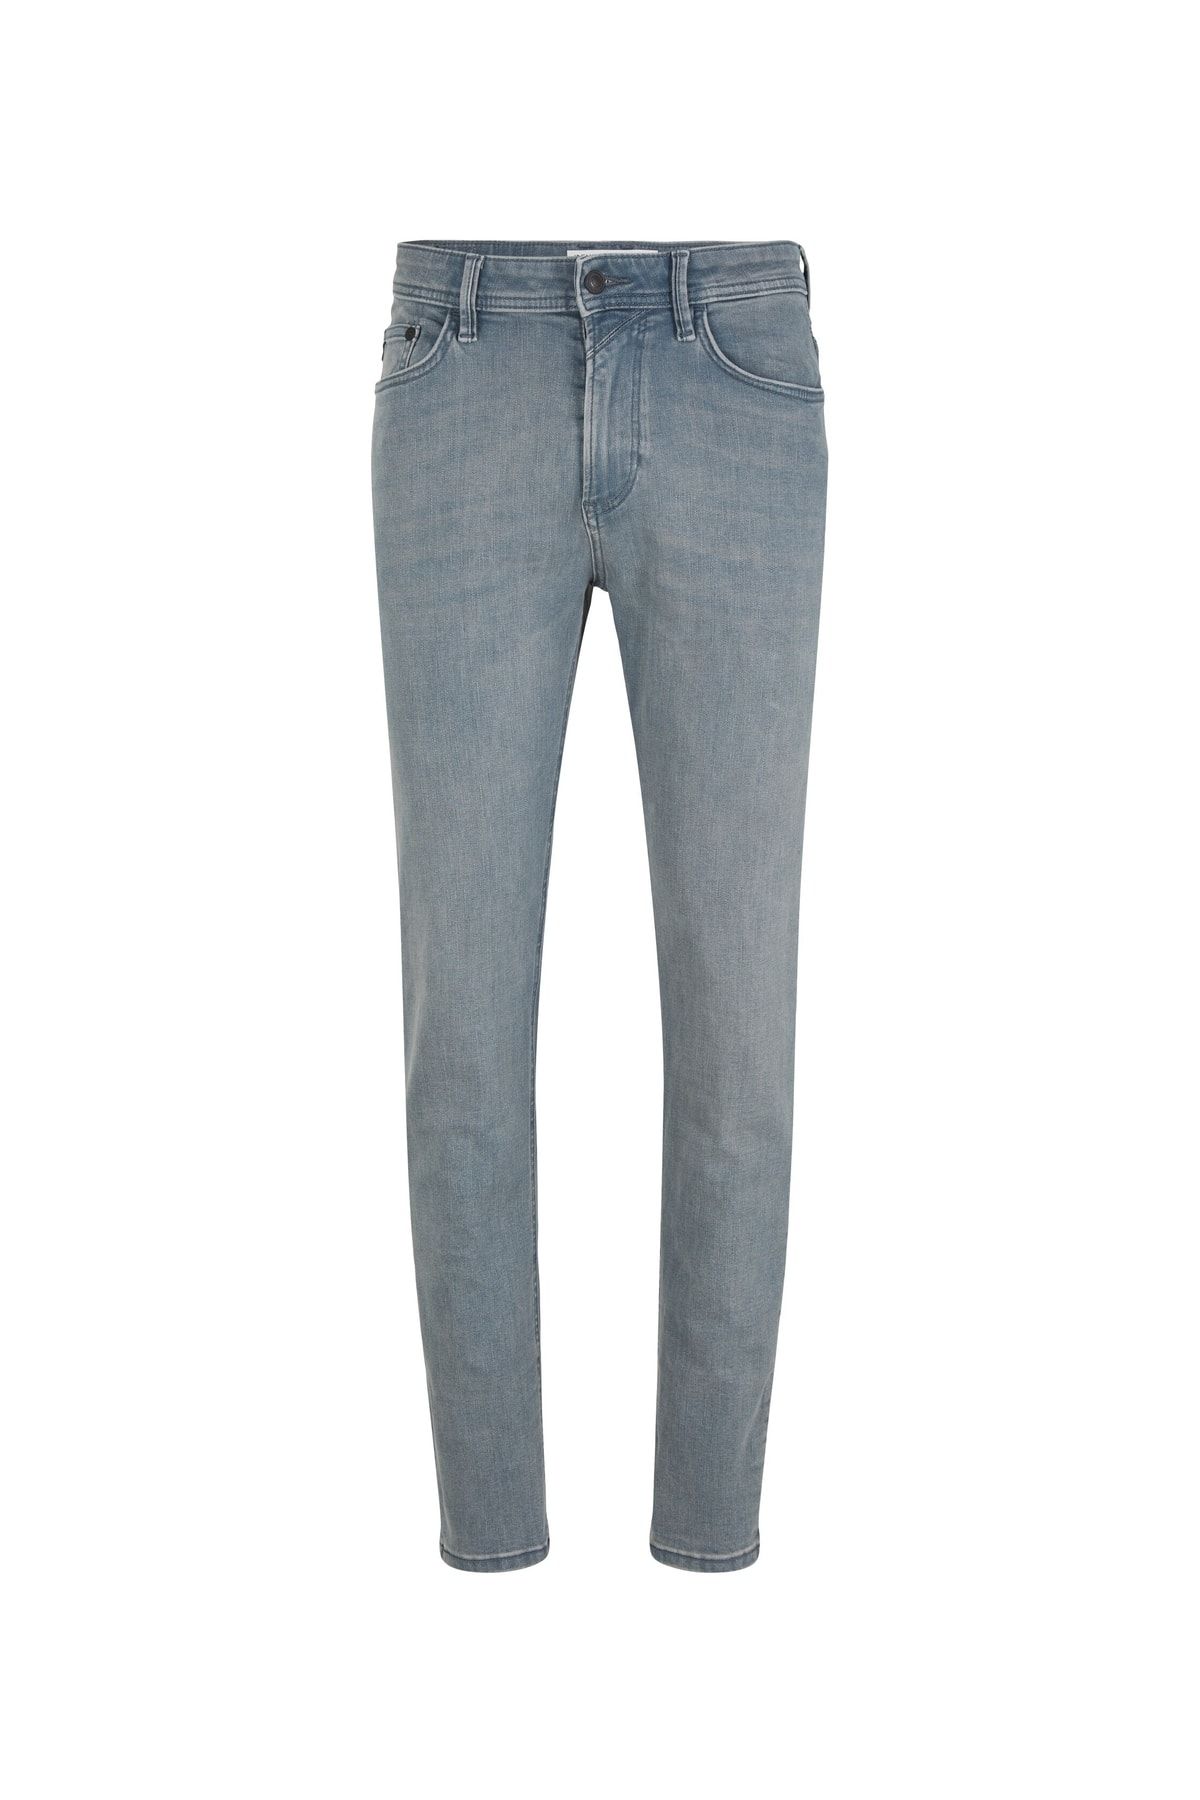 Straight - Tom Tailor - Trendyol Denim Blue Jeans -